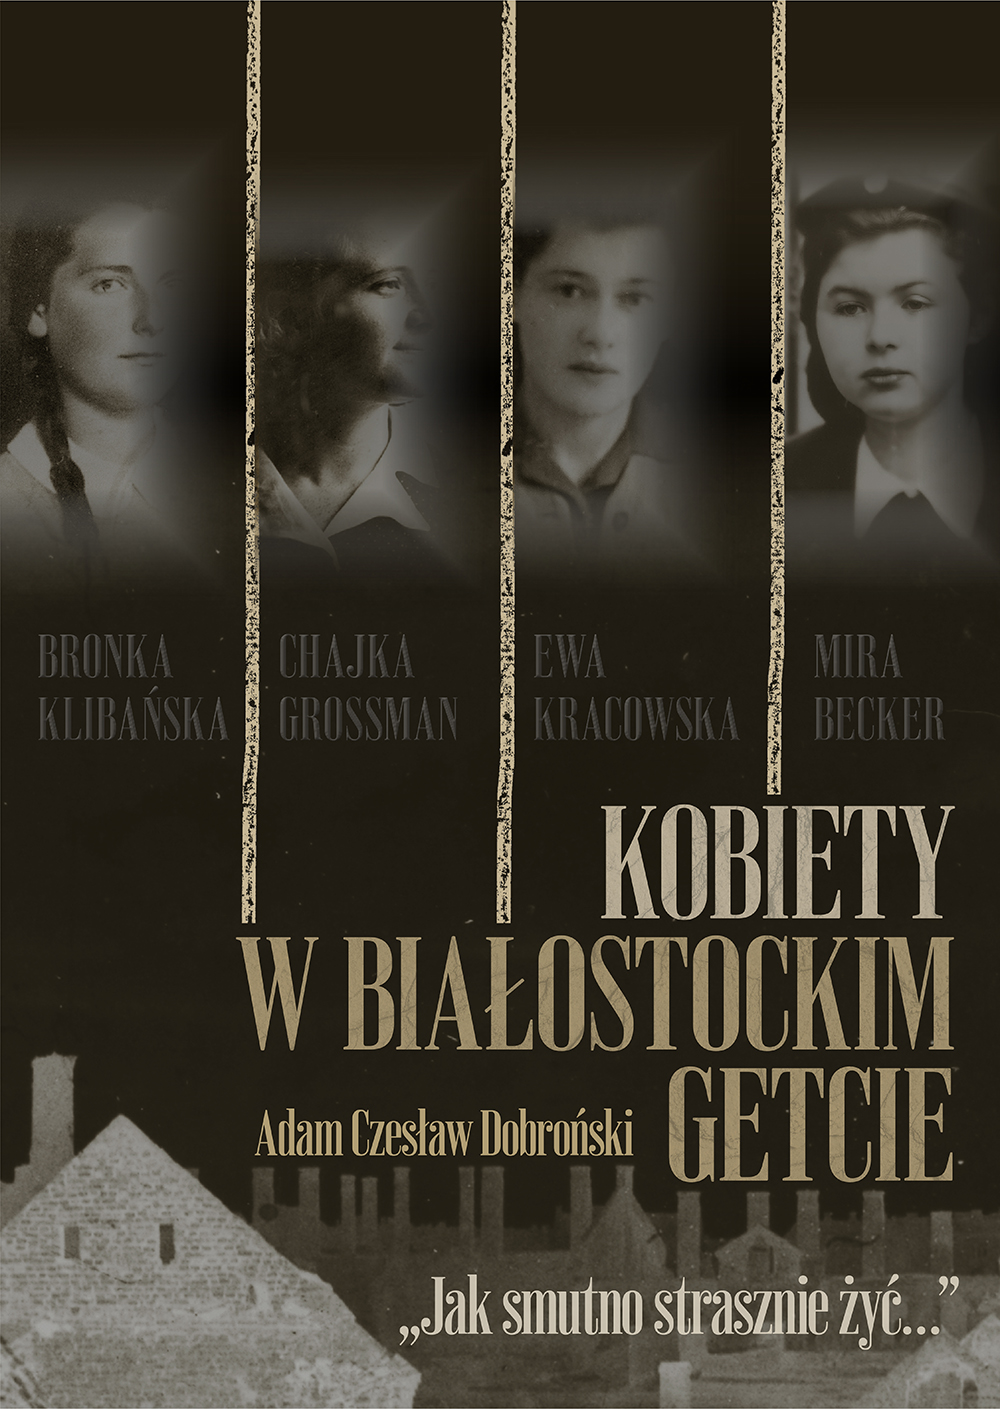 prof. Adam Czesław Dobroński: Women in the Białystok Ghetto. How sad it is to live...